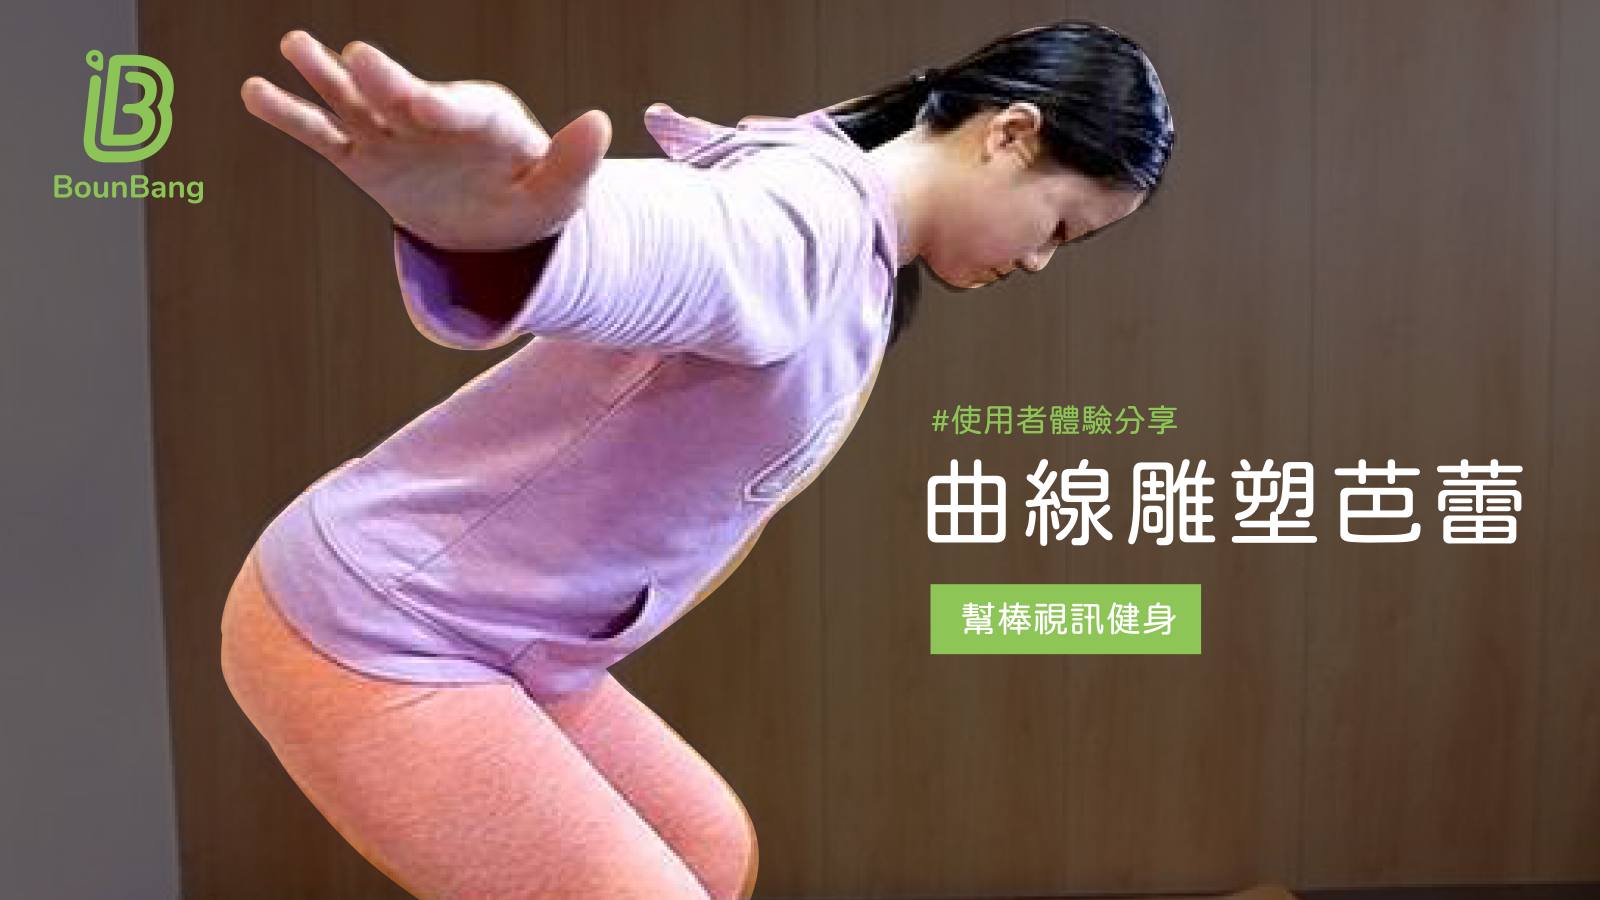 線上健身視訊課程Demo-【線上健身體驗】在家也能健身!擁有完美曲線原來那麼簡單?!